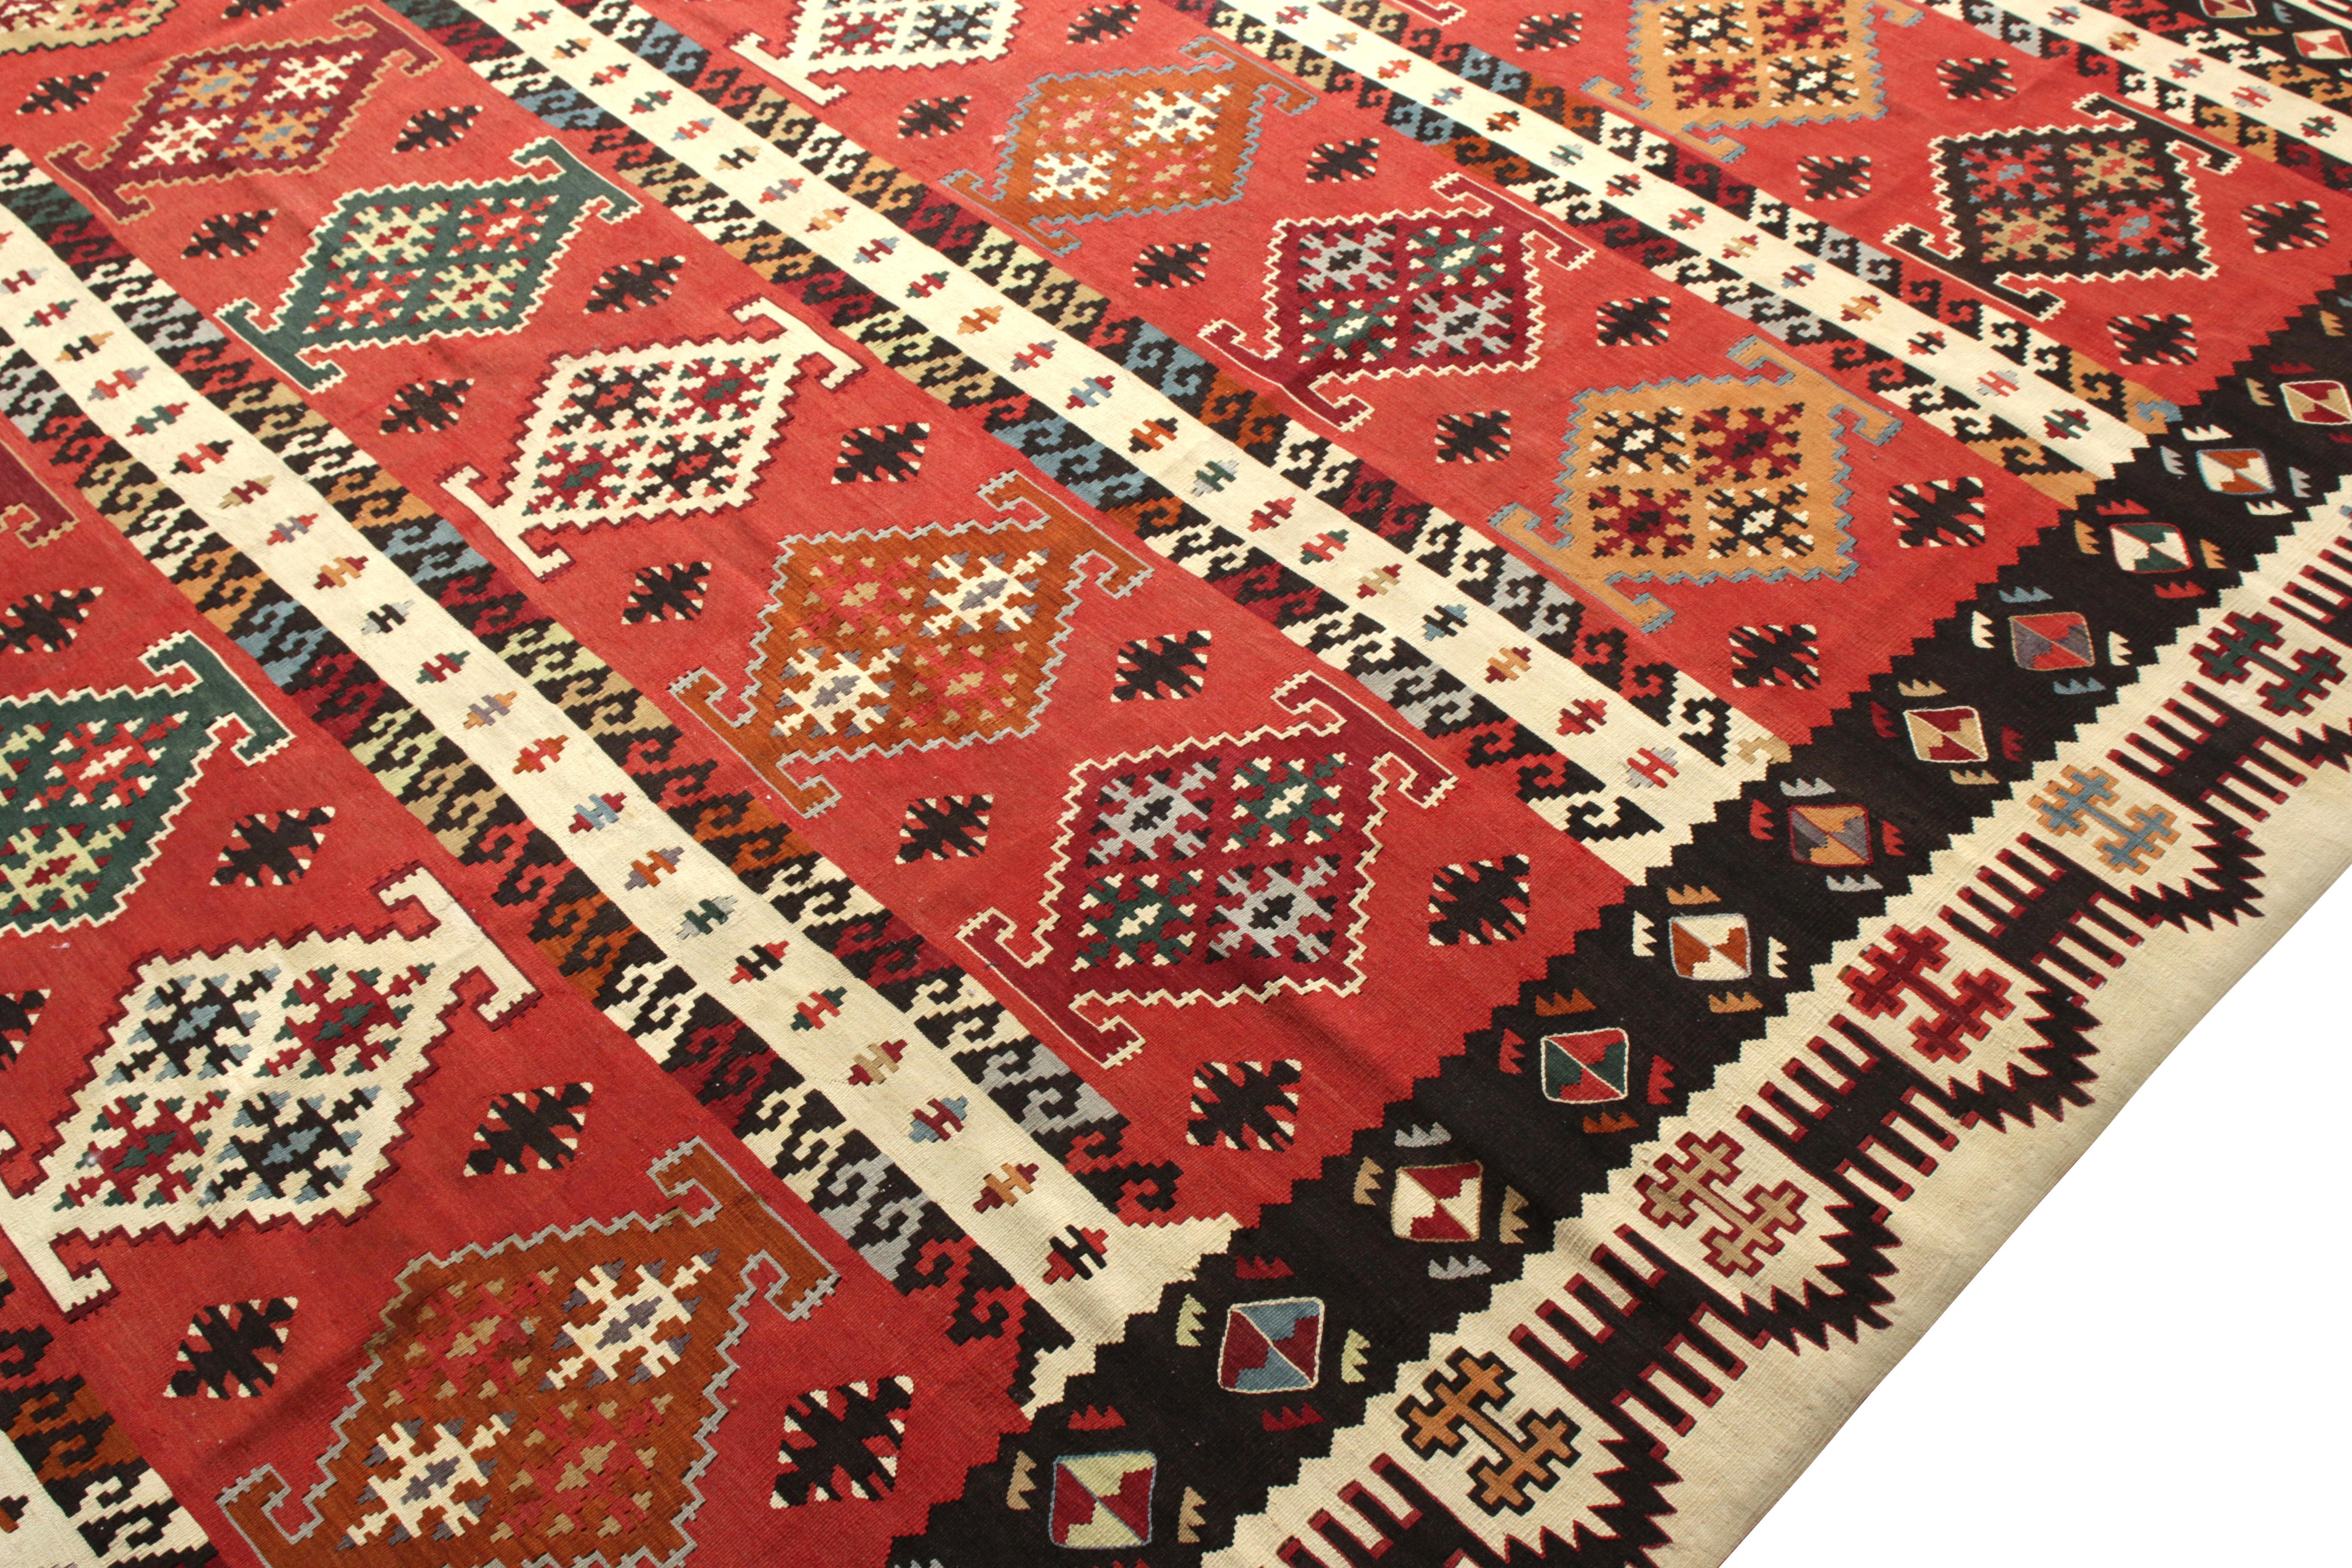 Hand-Woven Vintage Midcentury Kilim Rug in Red Beige-Brown Geometric Pattern by Rug & Kilim